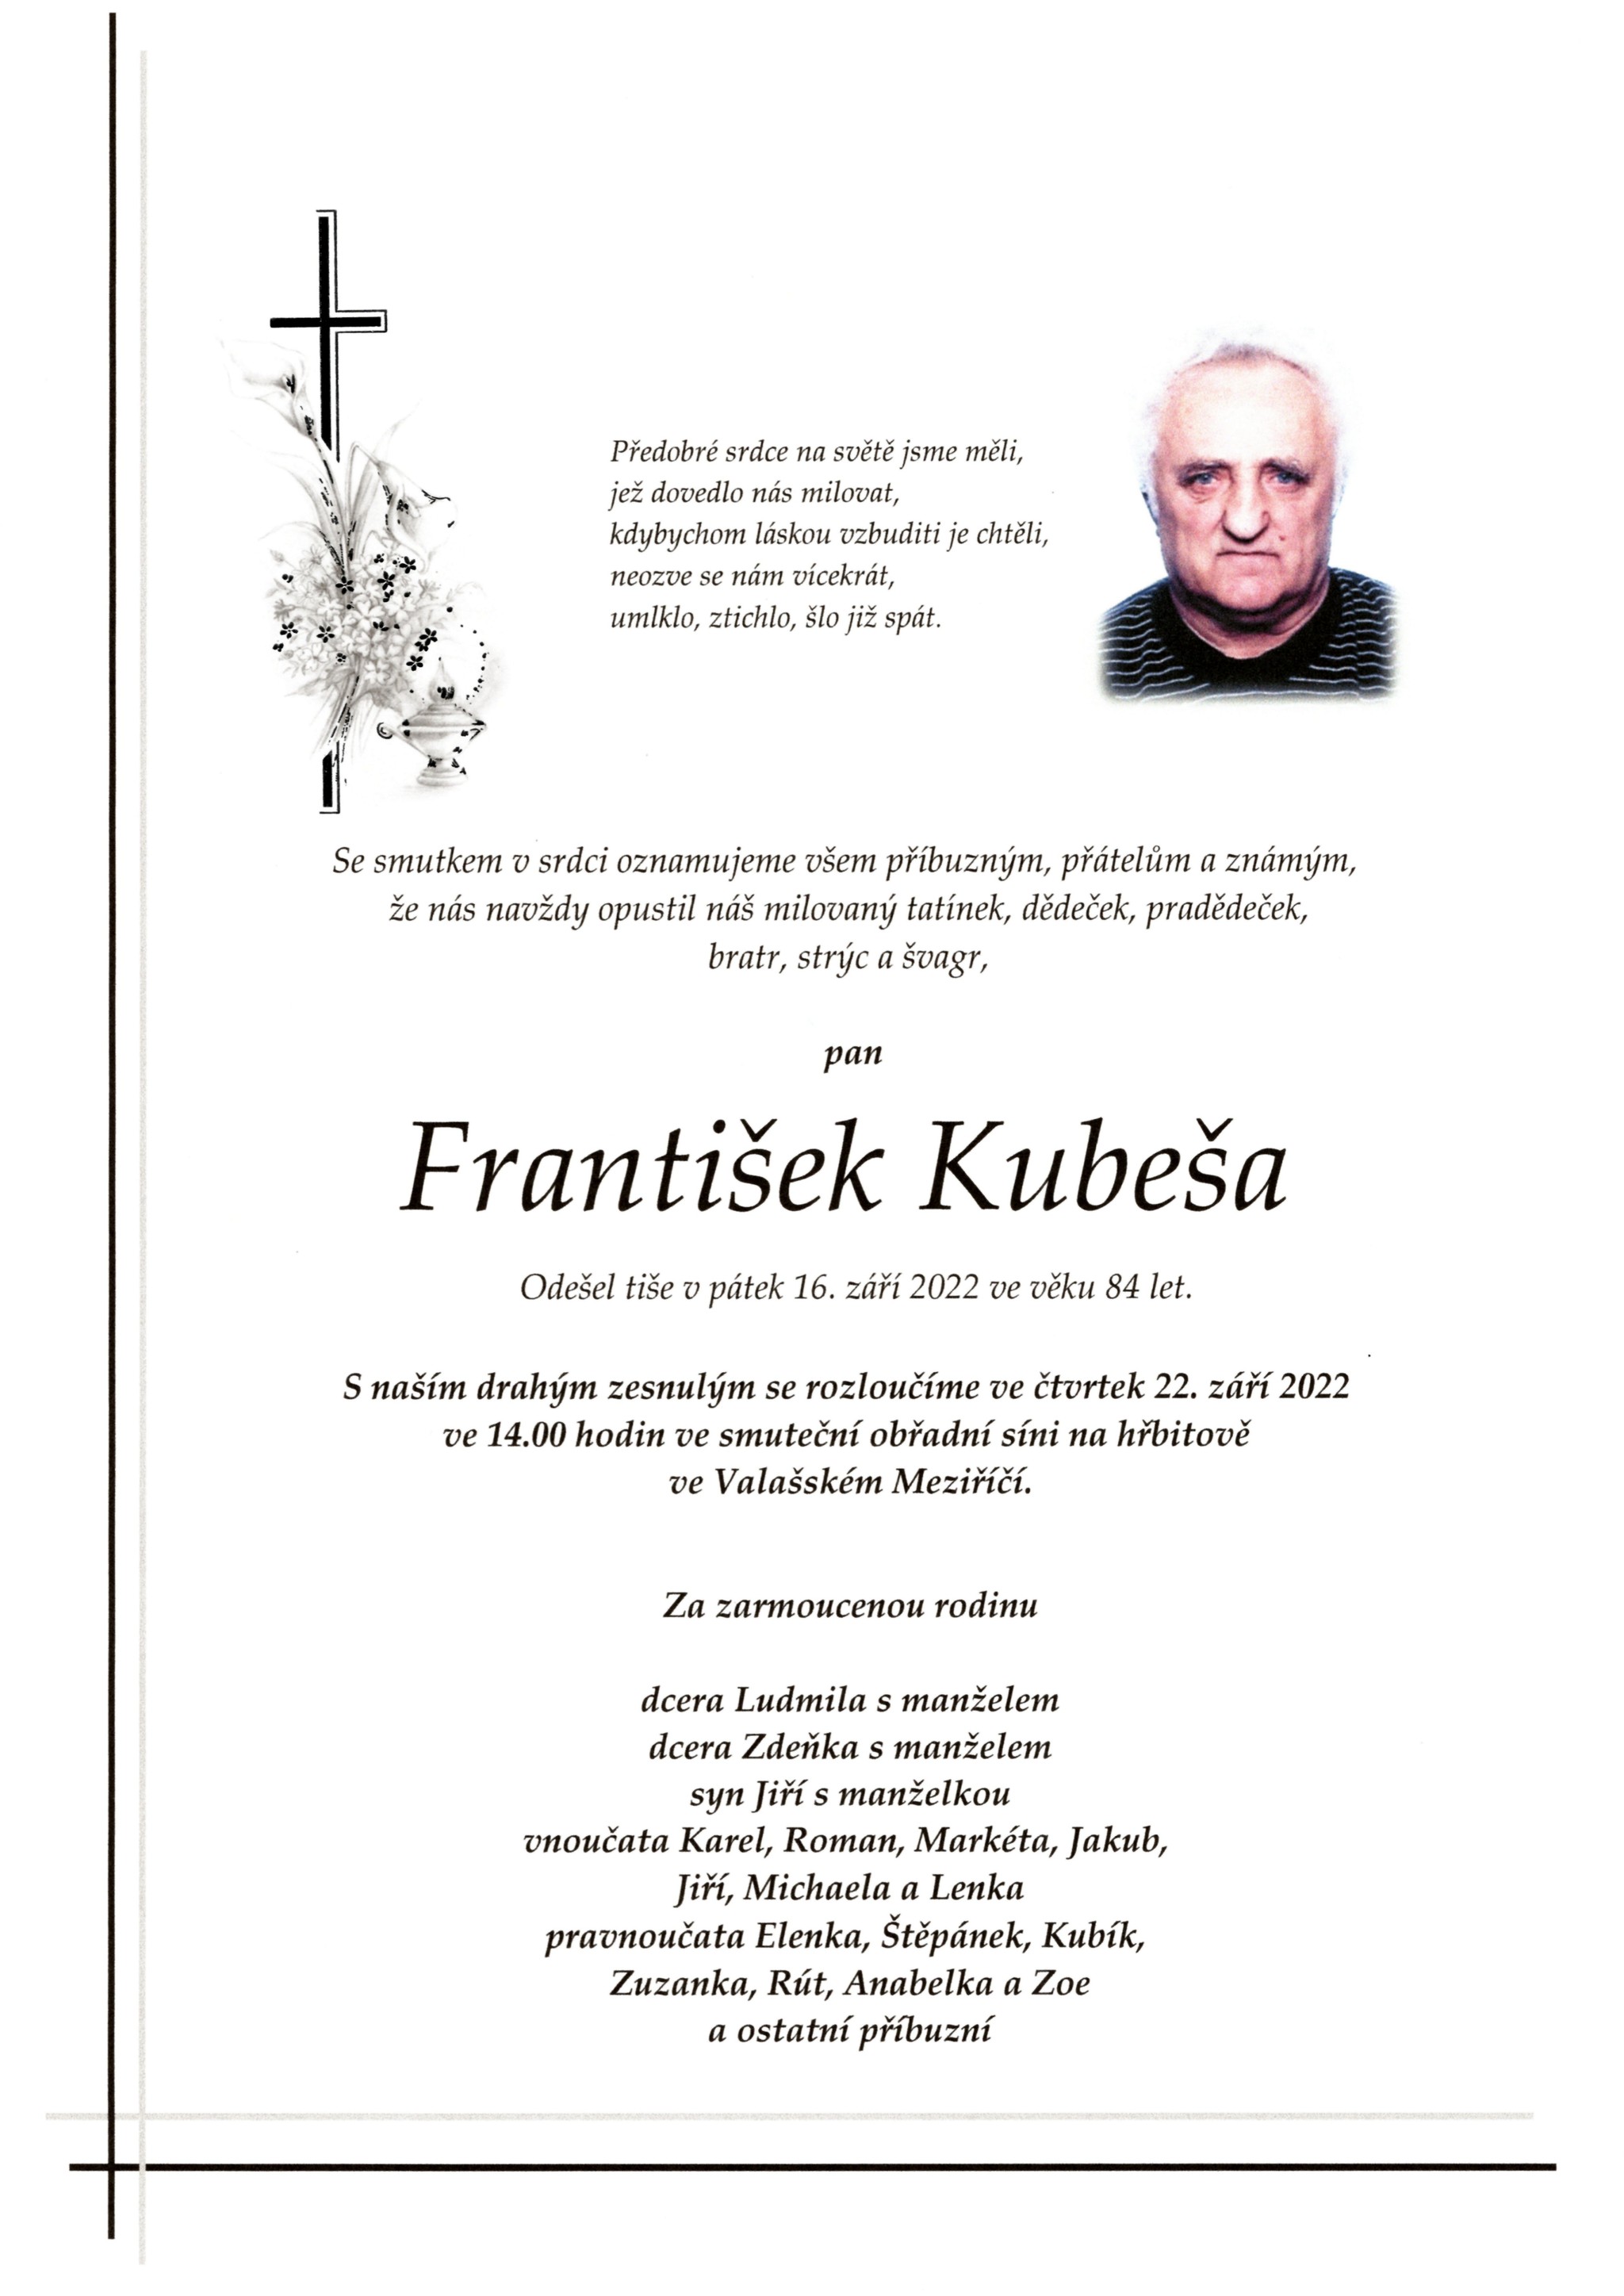 František Kubeša